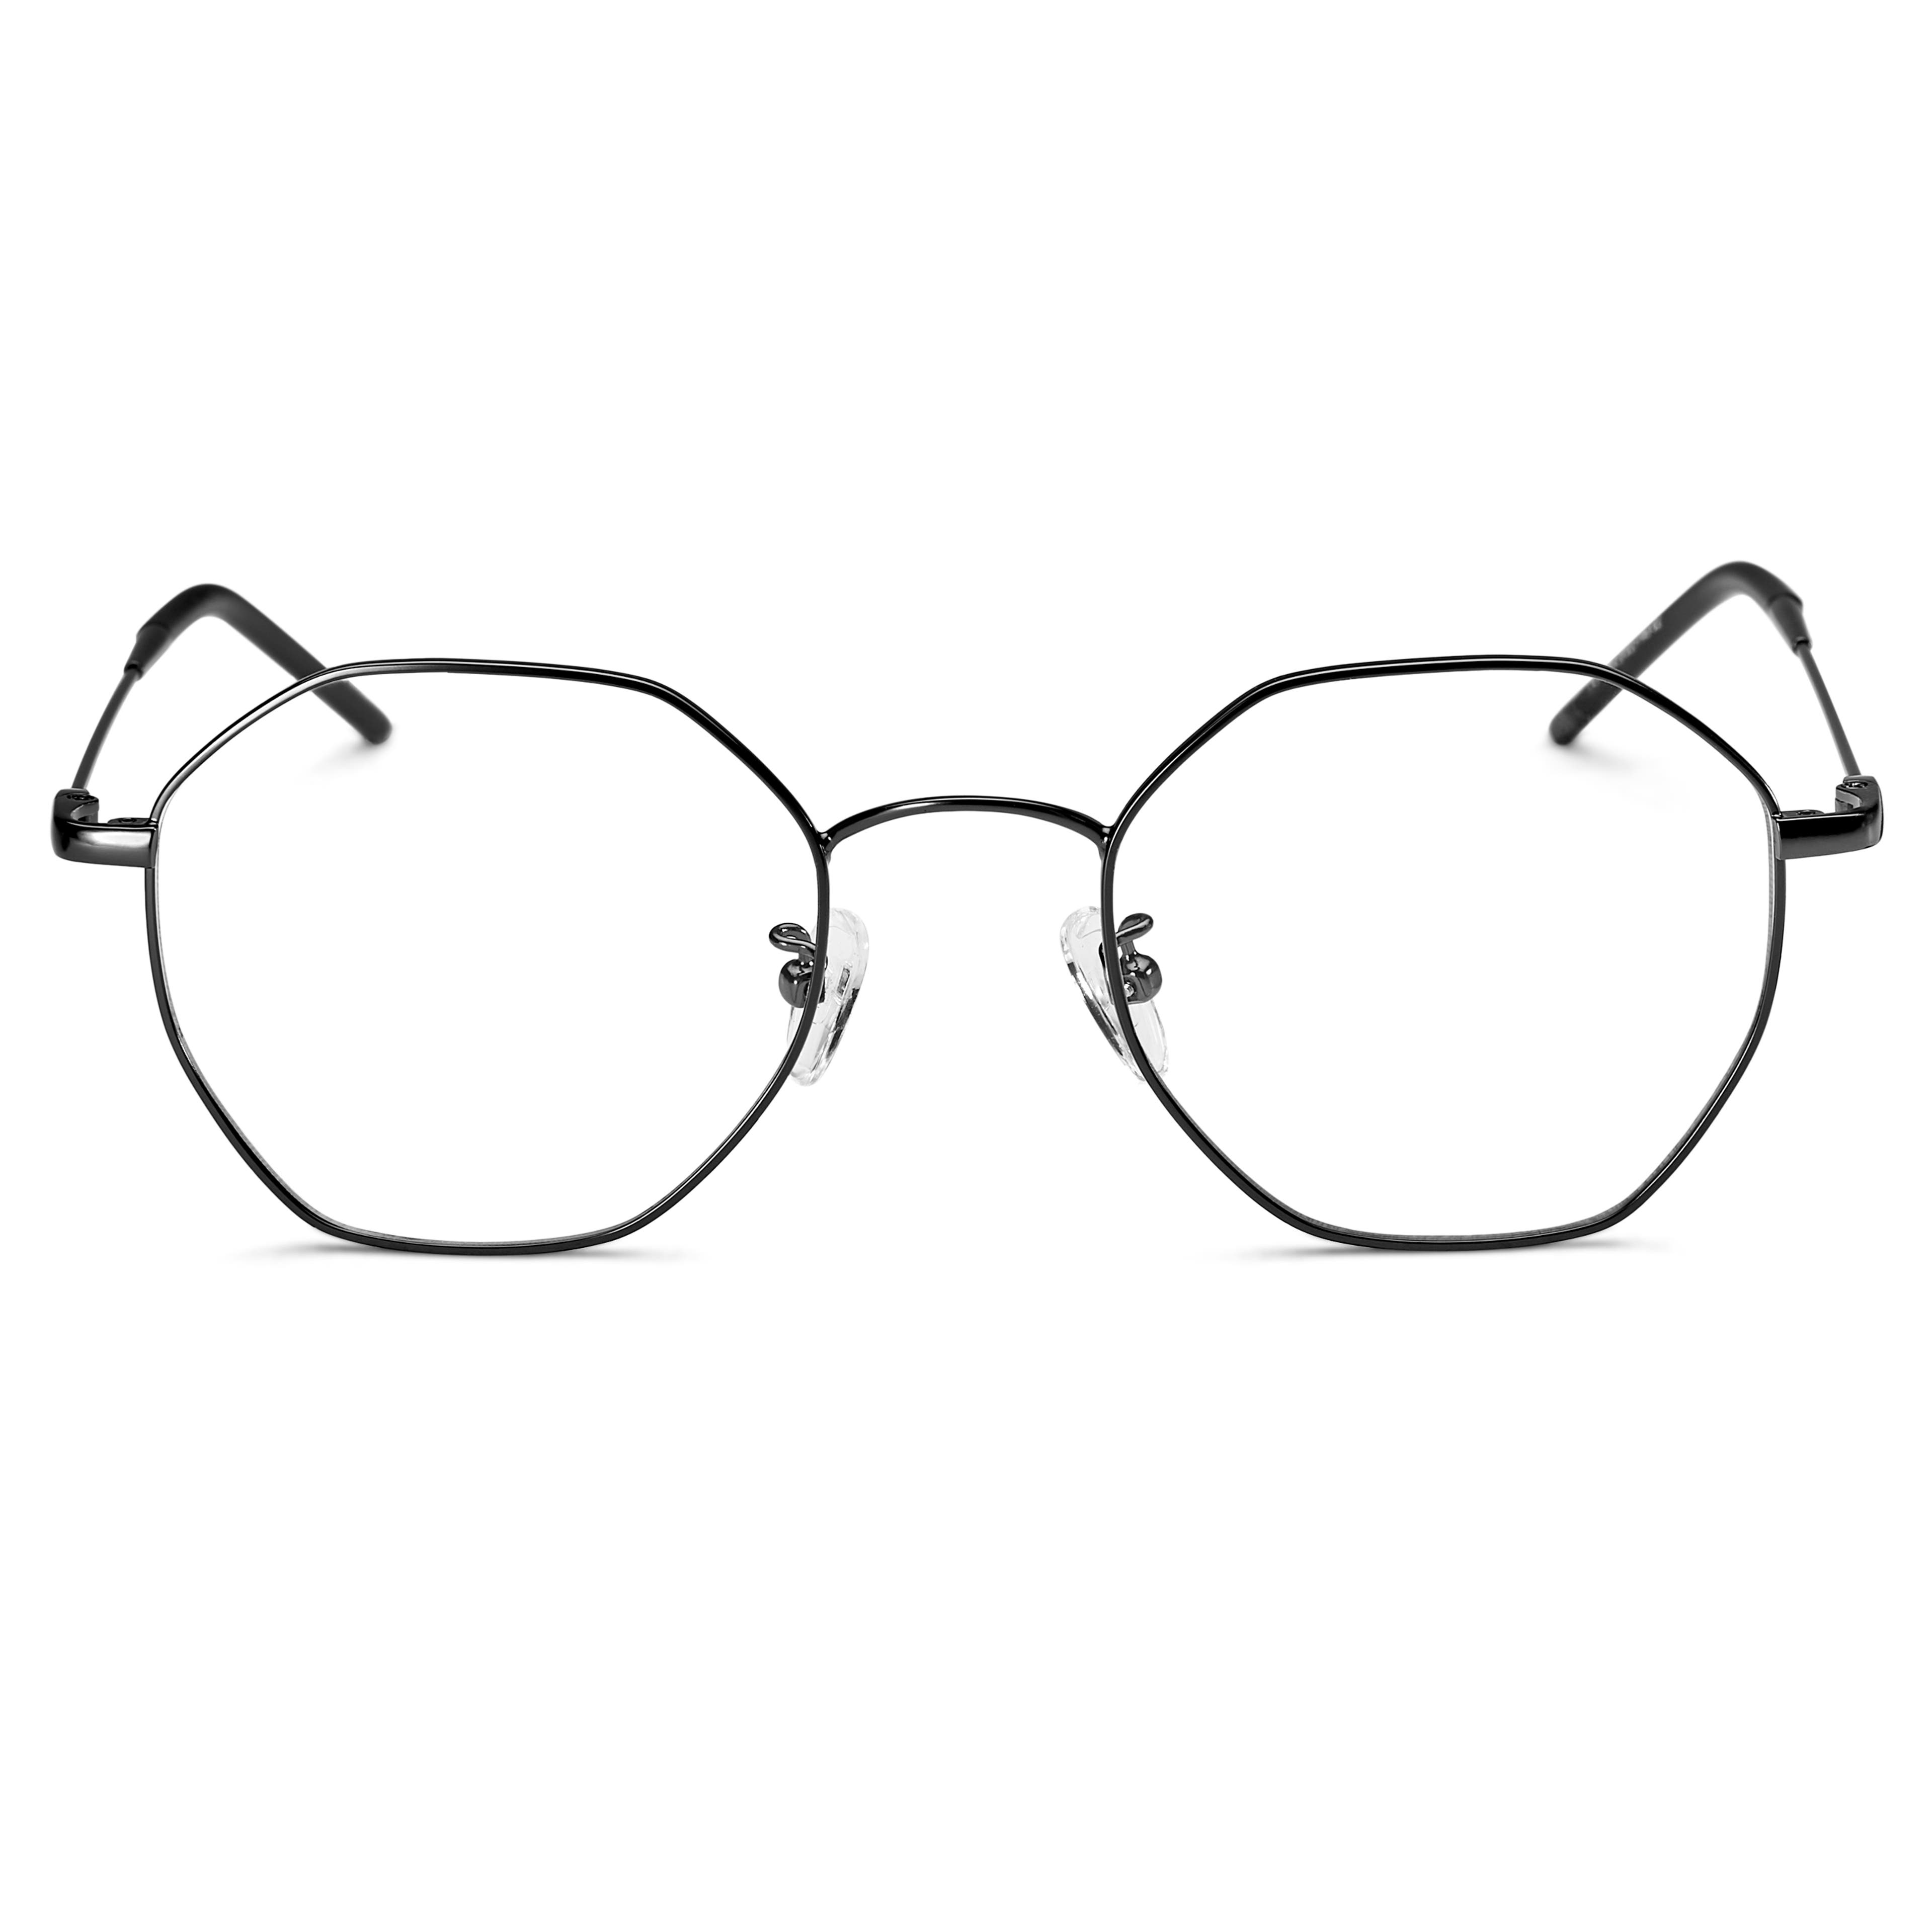 Classic Retro Style Square Black Lensless Eye Glasses- Frame Only